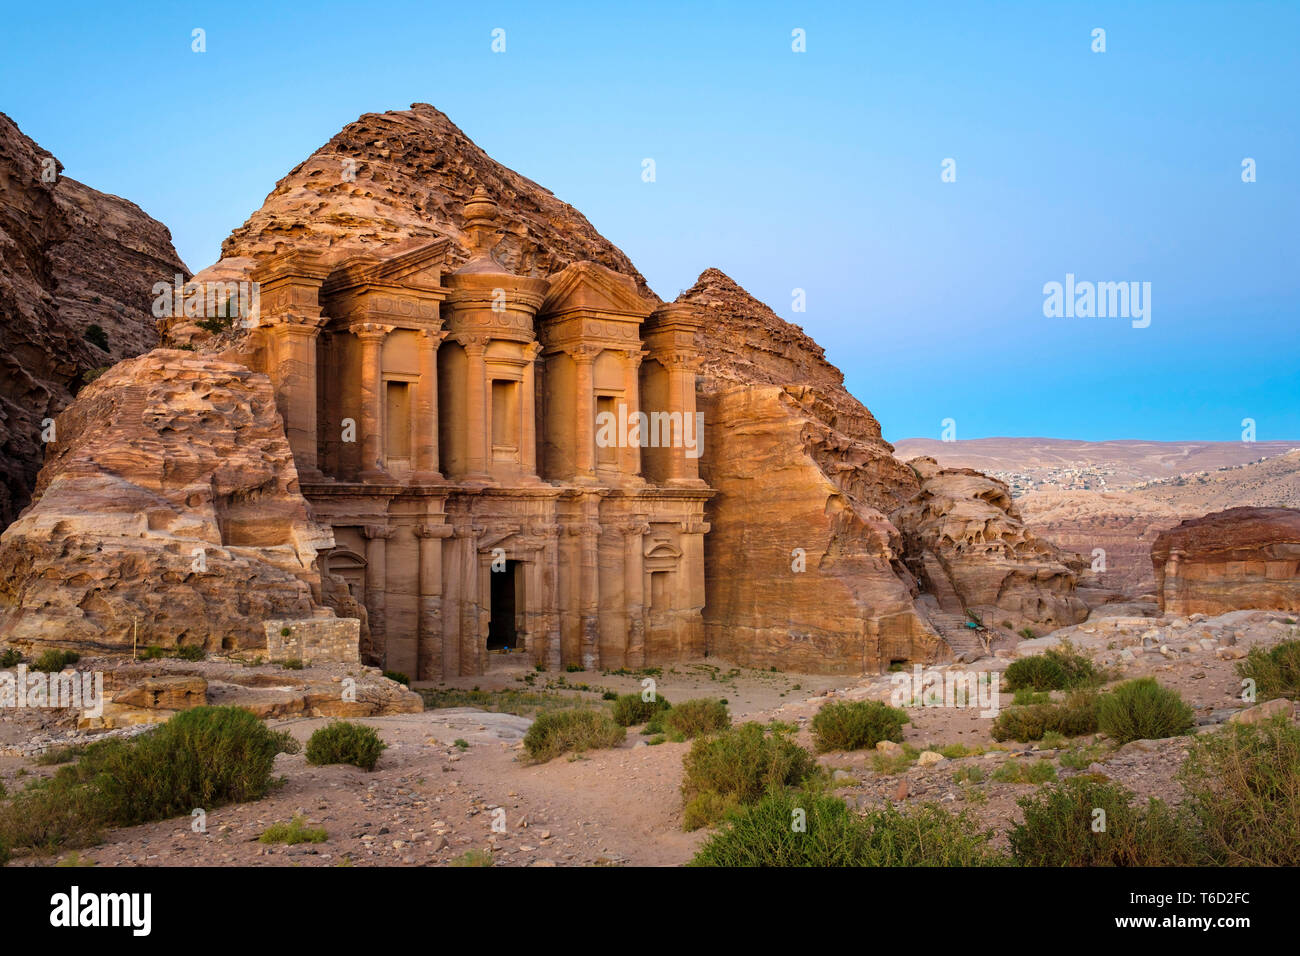 La Jordanie, le Gouvernorat de Ma'an, Petra. UNESCO World Heritage Site. Le monastère Ad-Deir, au crépuscule. Banque D'Images